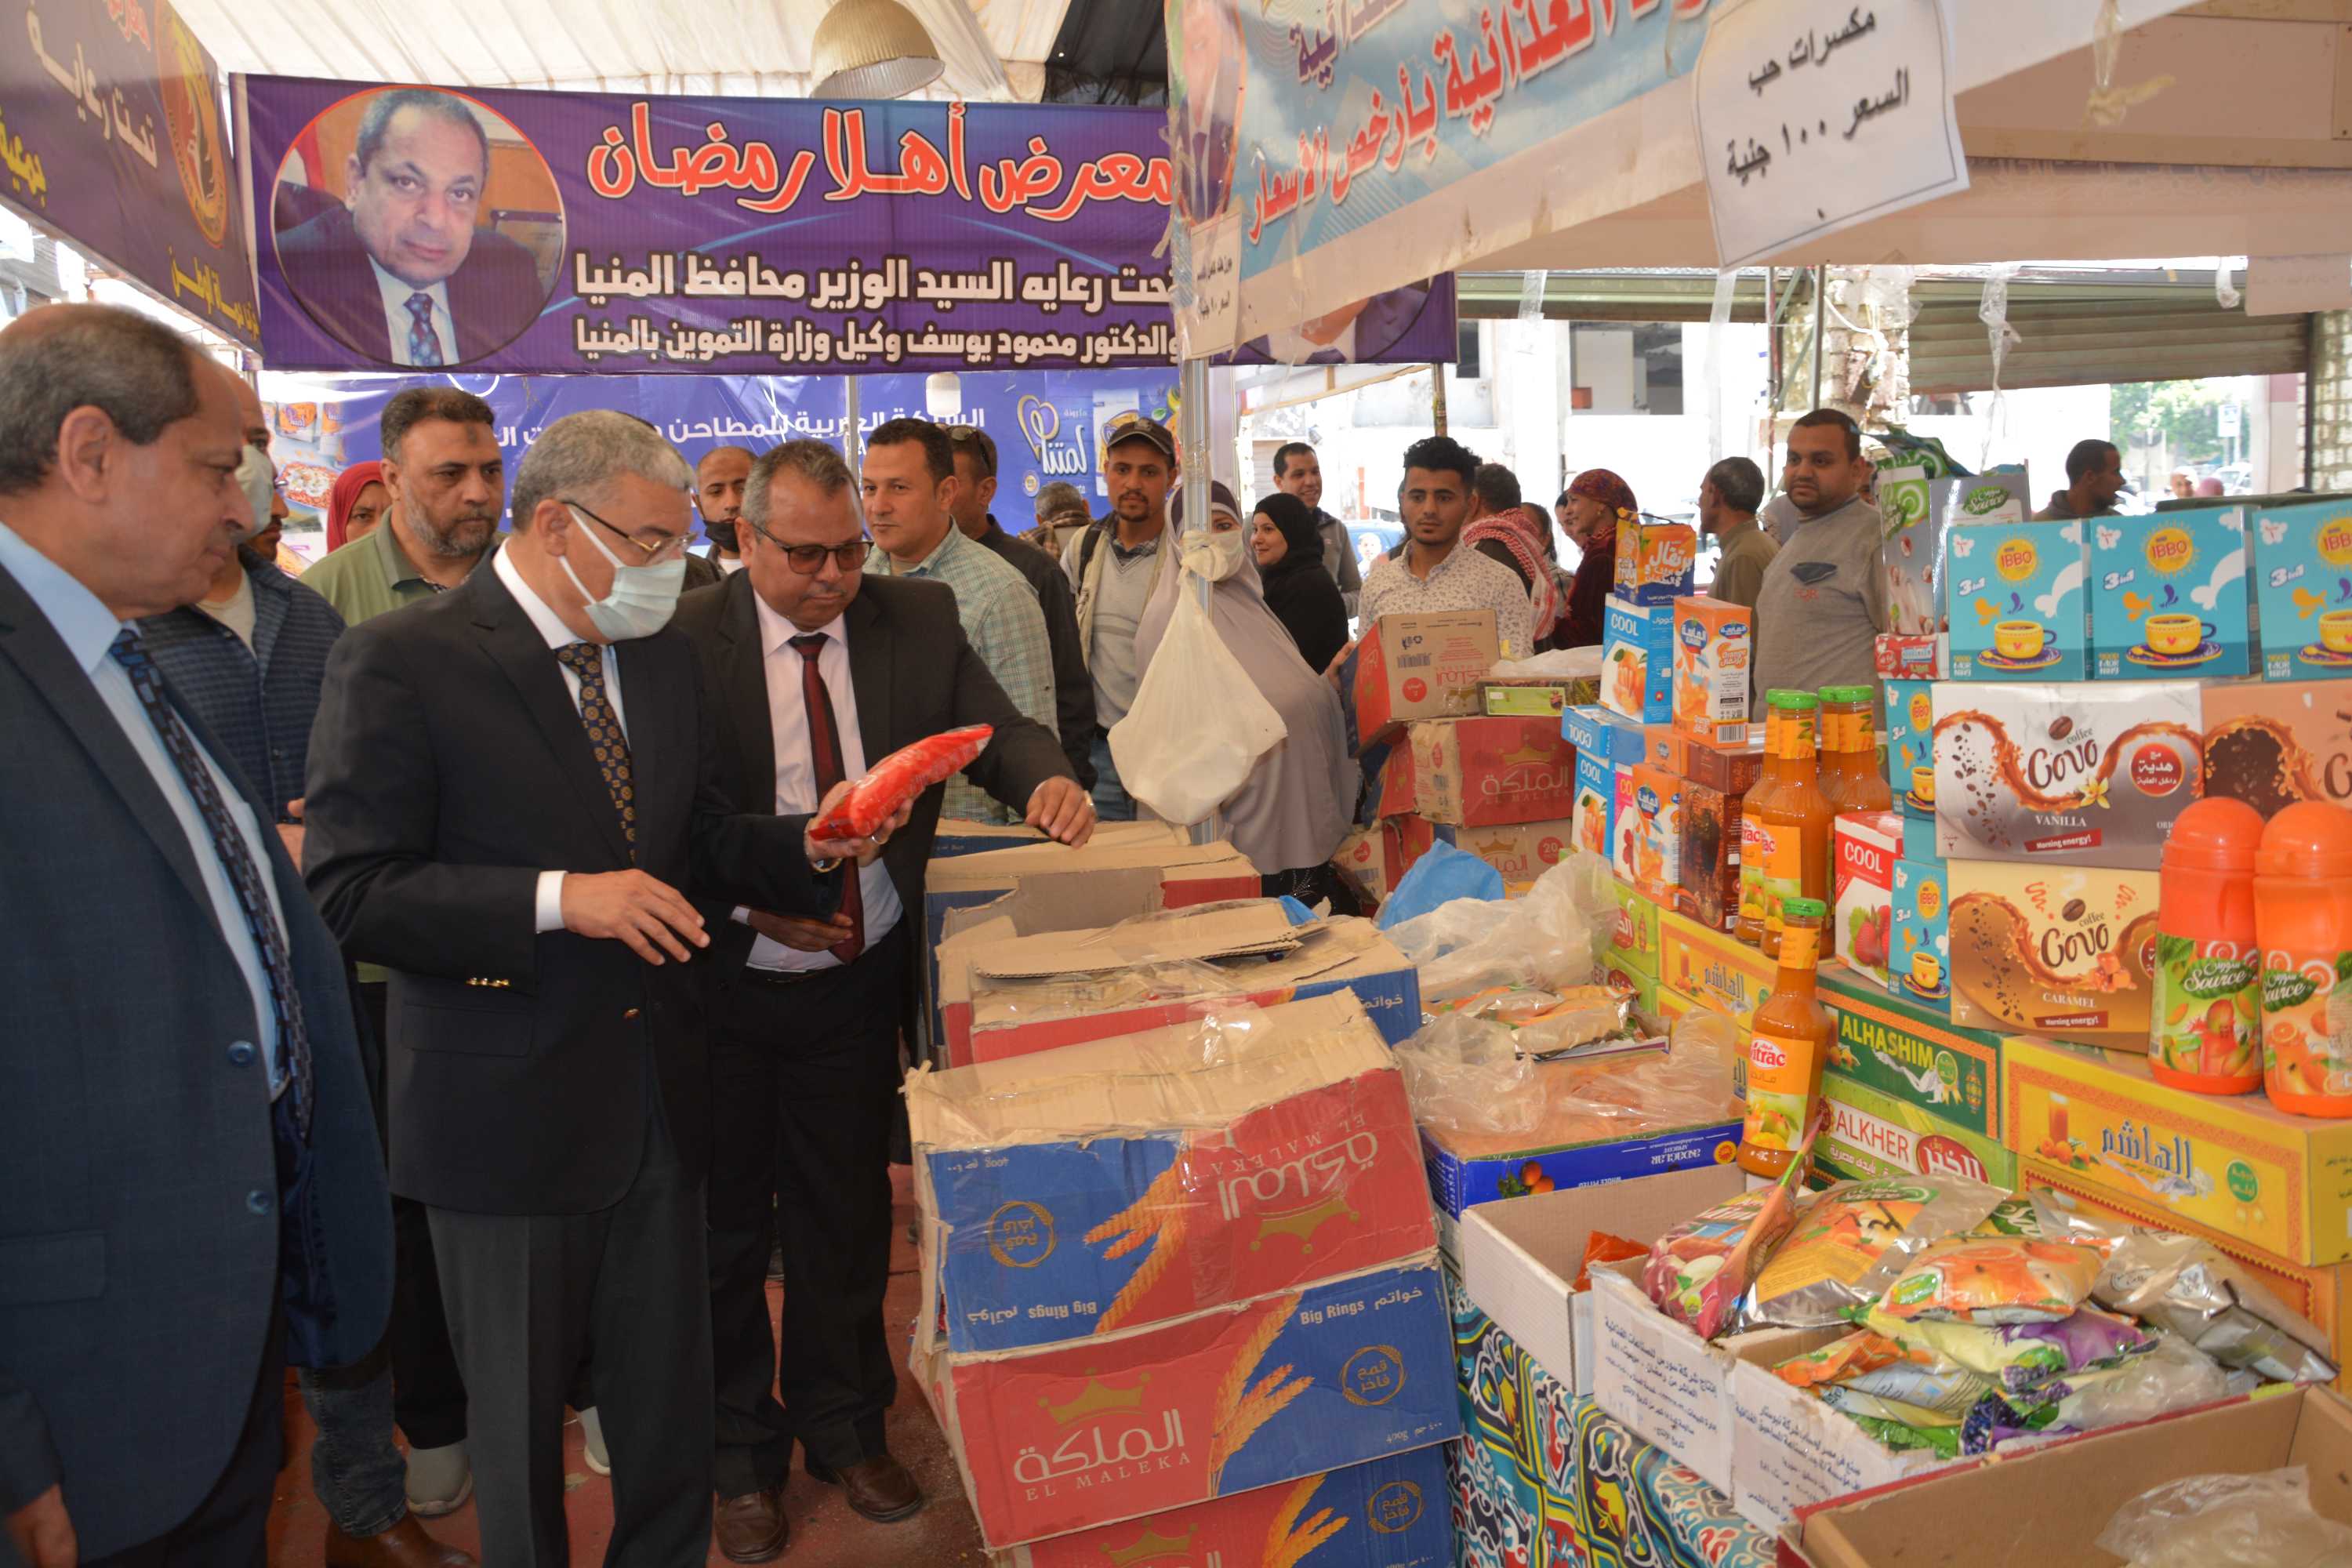 محافظ المنيا يتفقد معرض أهلا رمضان وموقع سوق الحبشي لتجهيز شوادر لبيع الخضر والفواكه بأسعار مخفضة  (5)